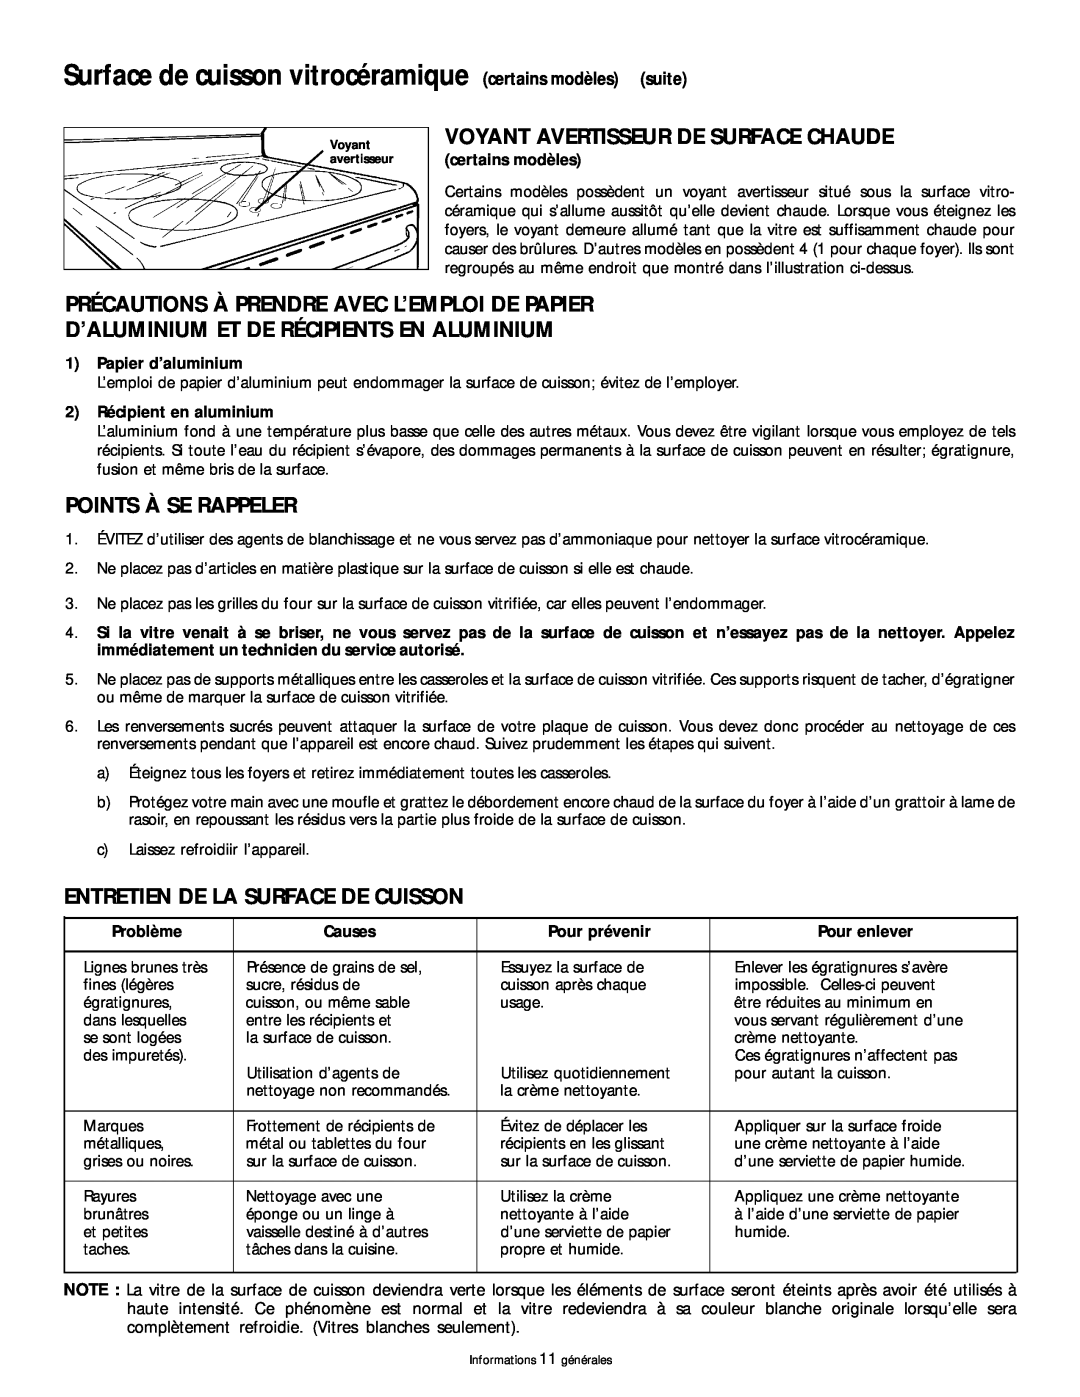 Frigidaire 318200404 manual Surface de cuisson vitrocéramique certains modèles suite, Voyant Avertisseur De Surface Chaude 